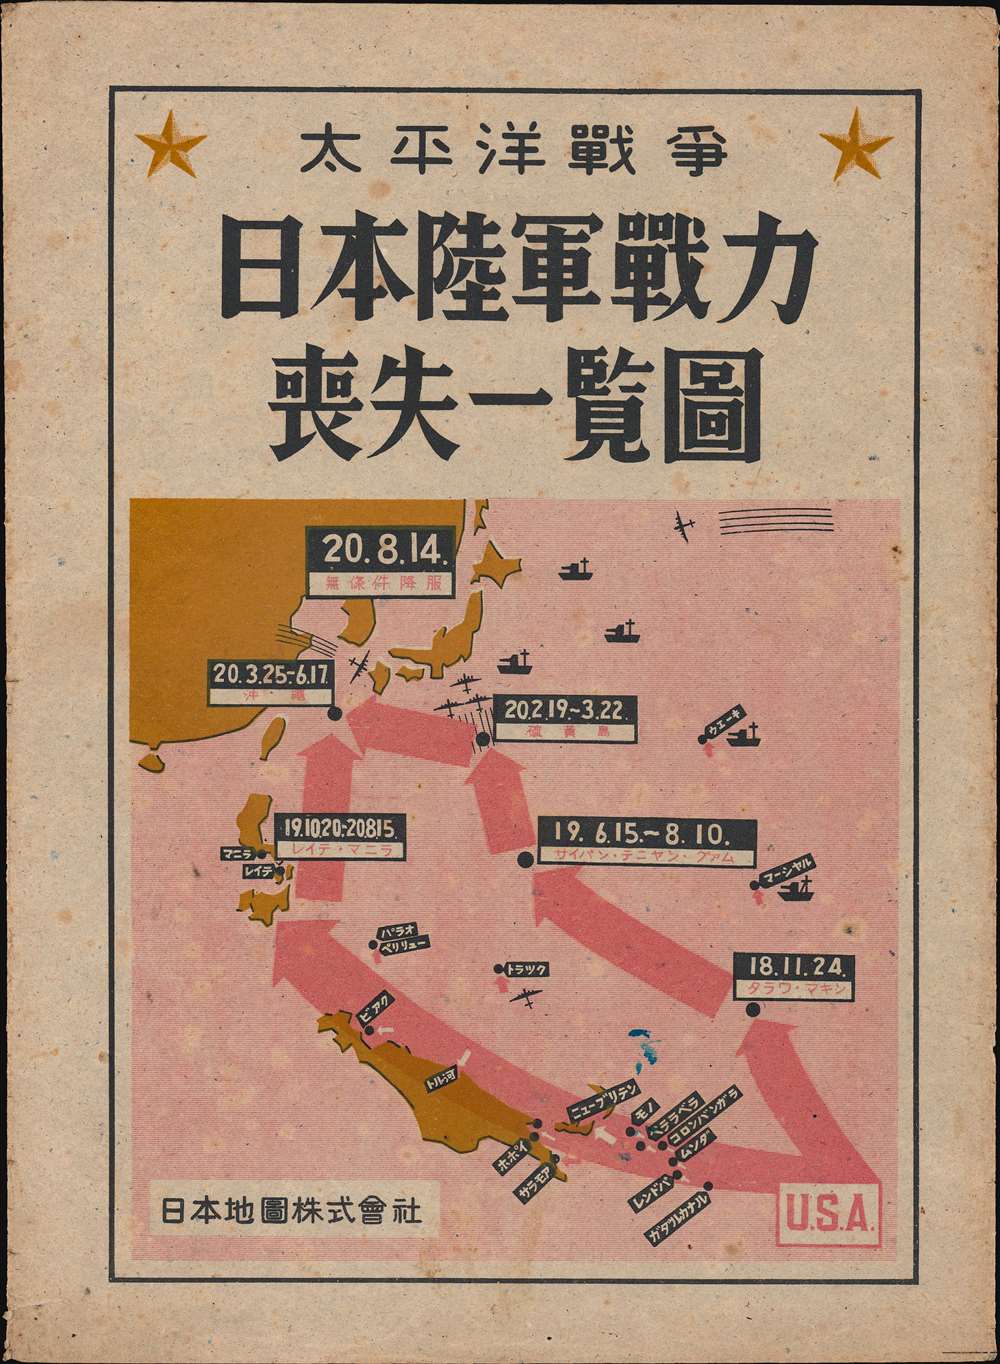 日本陸軍戰力喪失一覽圖 / Map of the Japanese Army's loss of combat power during the Pacific War. - Alternate View 1